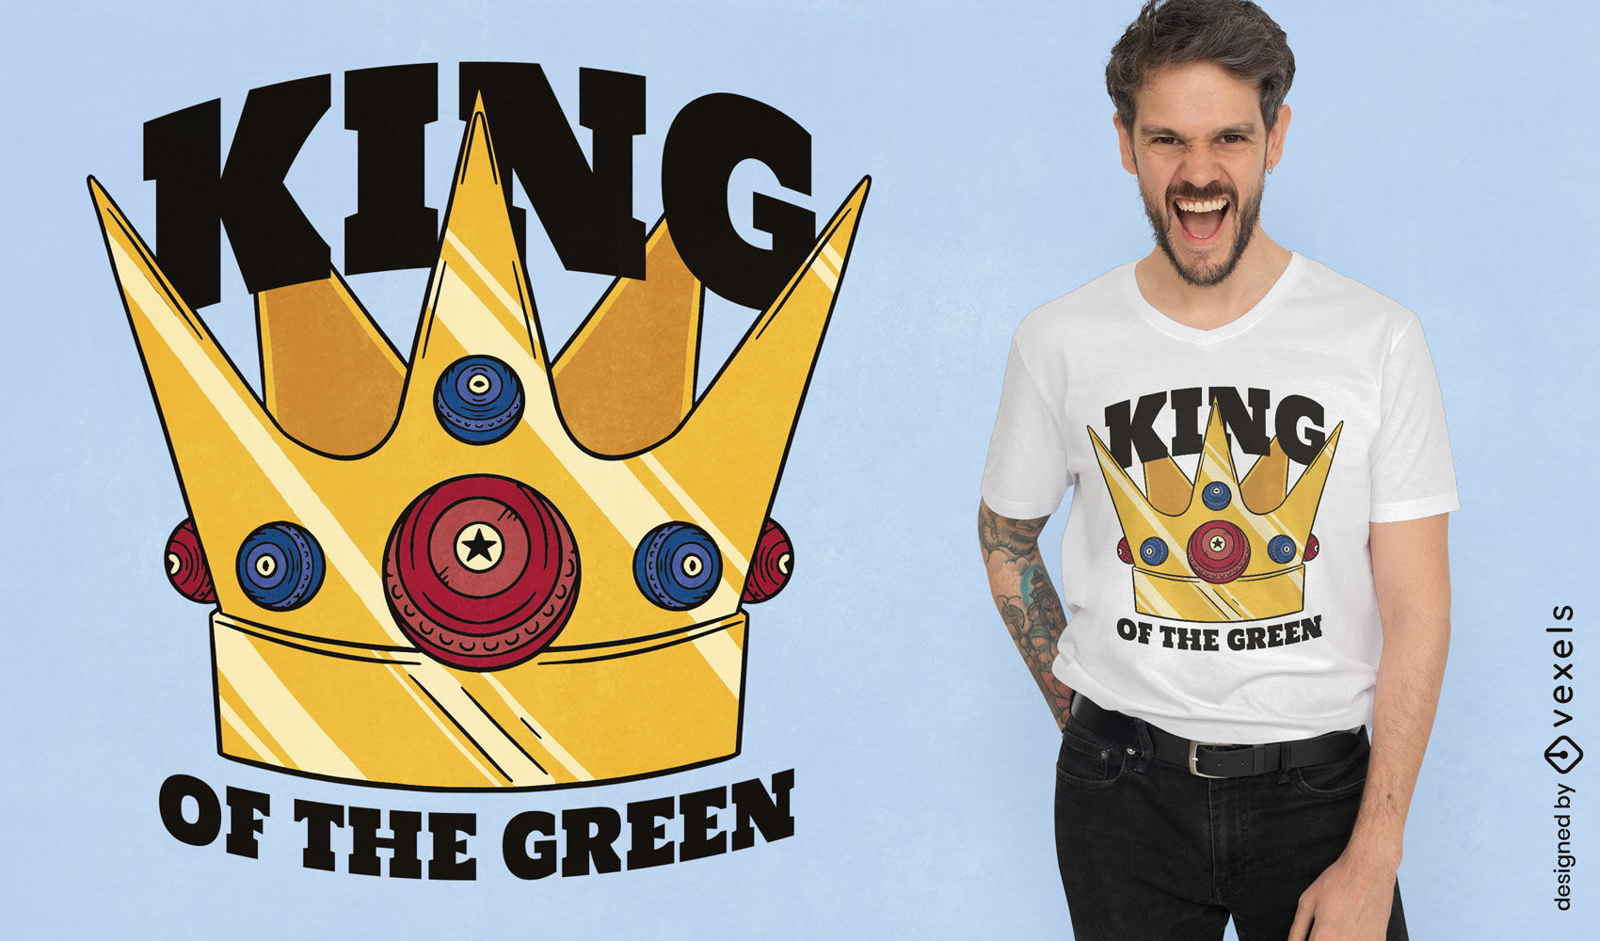 Diseño de camiseta rey de la corona verde.